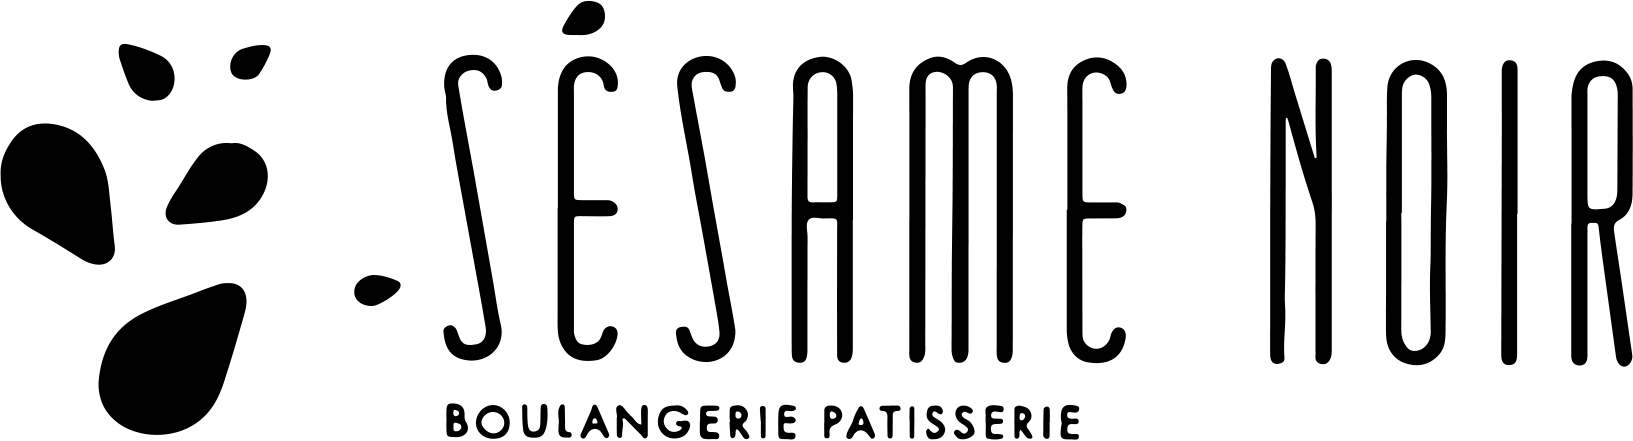 Sésame noir - boulangerie patisserie logo